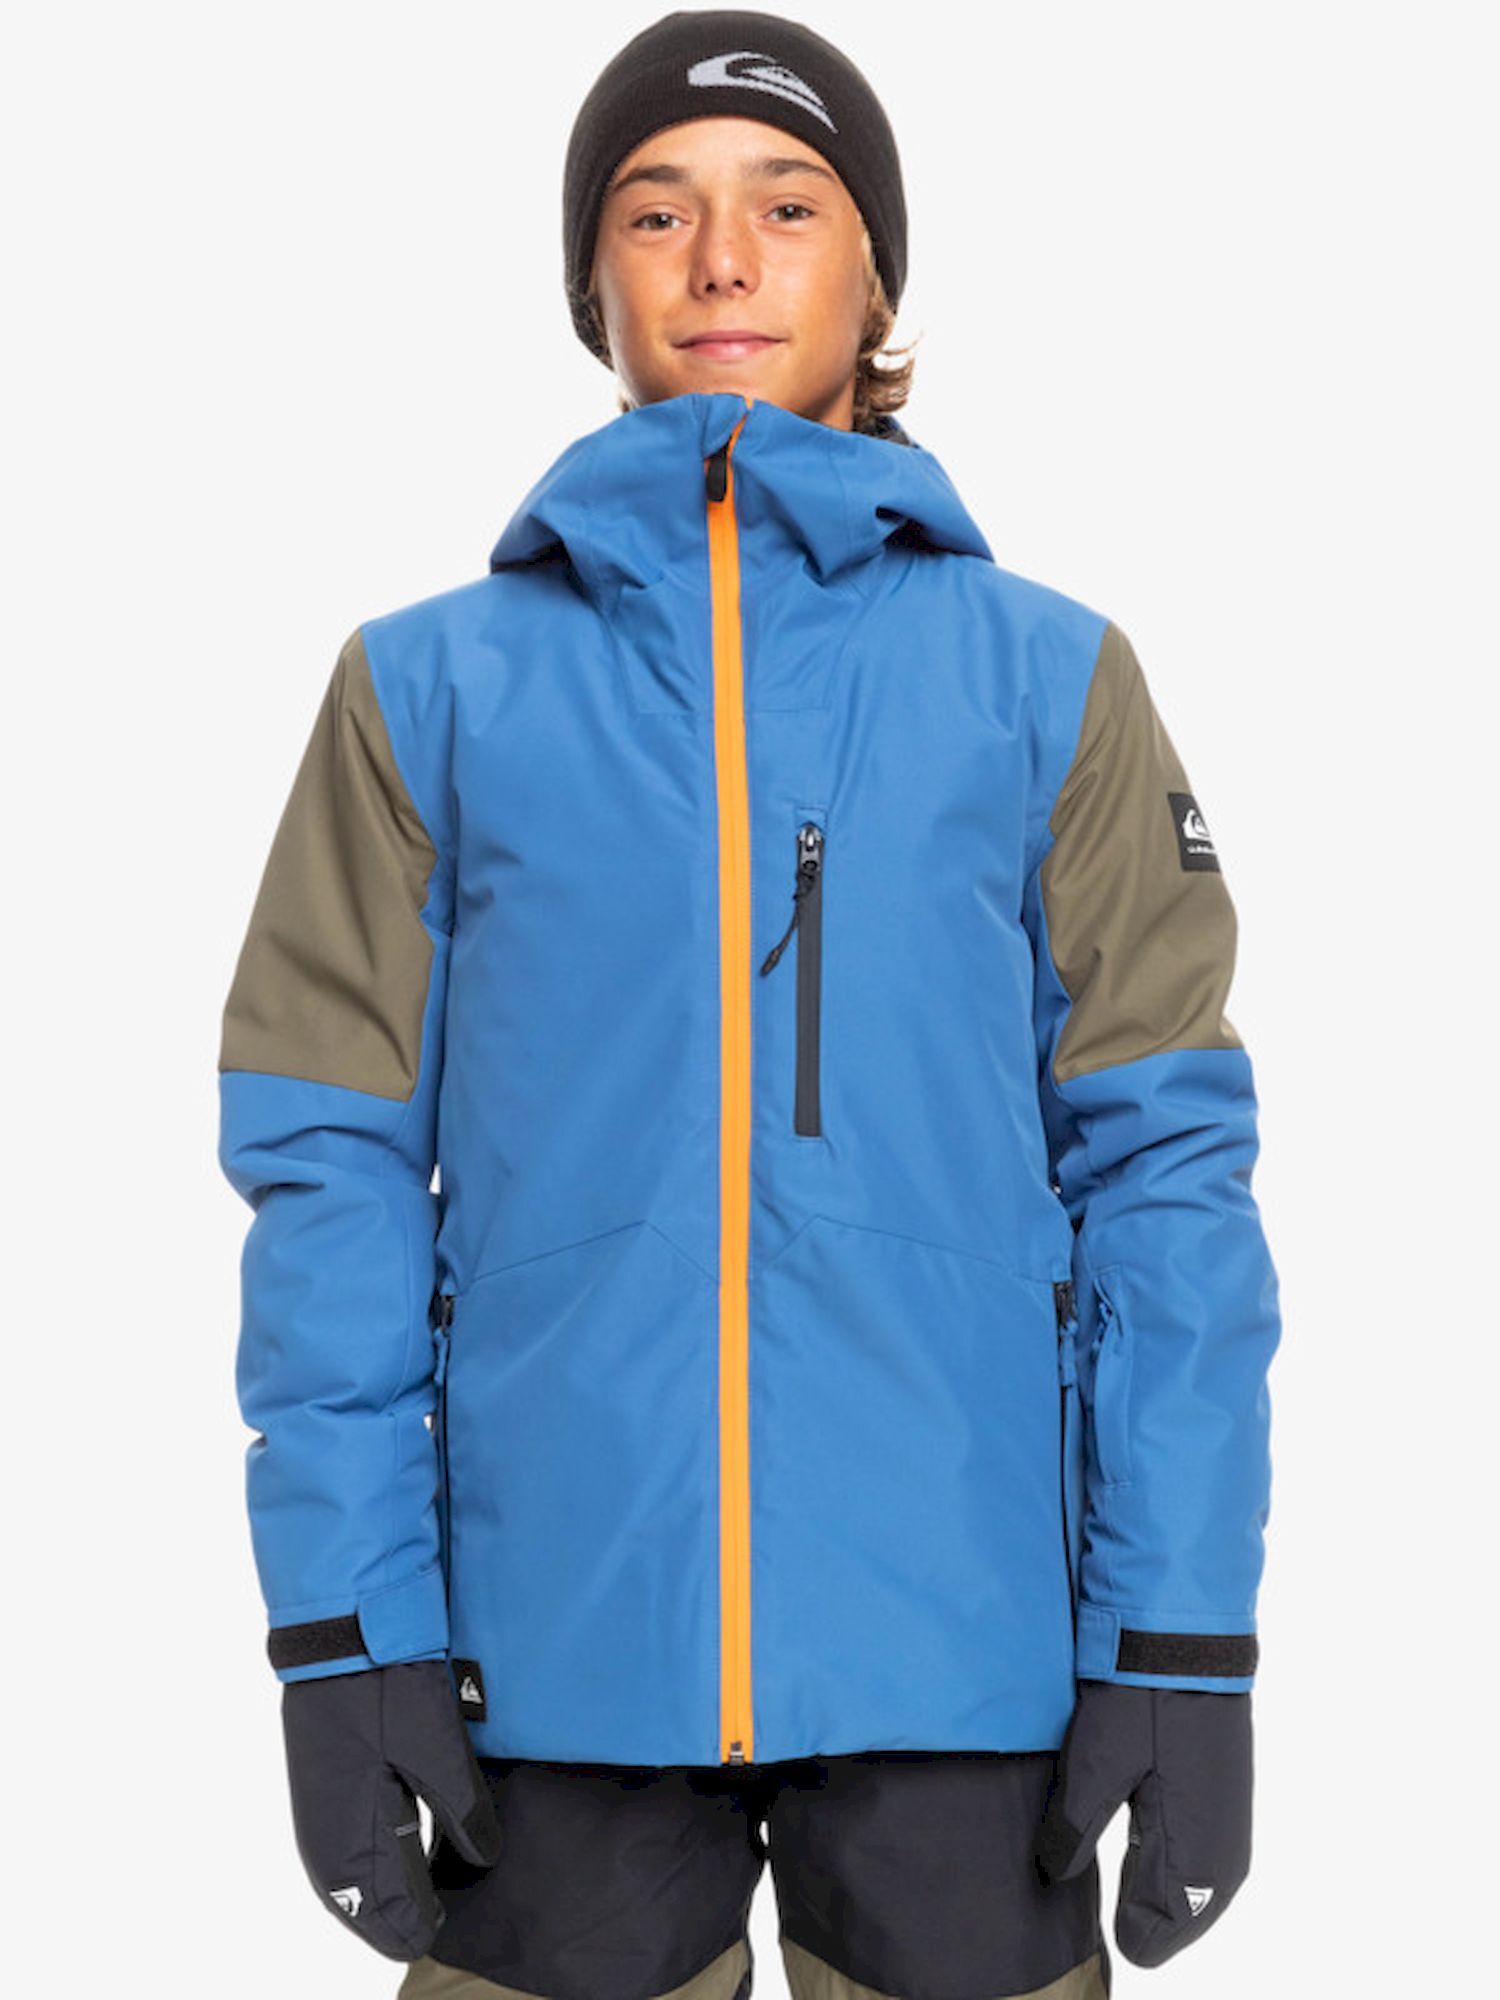 Quiksilver Travis Rice Youth Jacket - Chaqueta de esquí - Niños | Hardloop